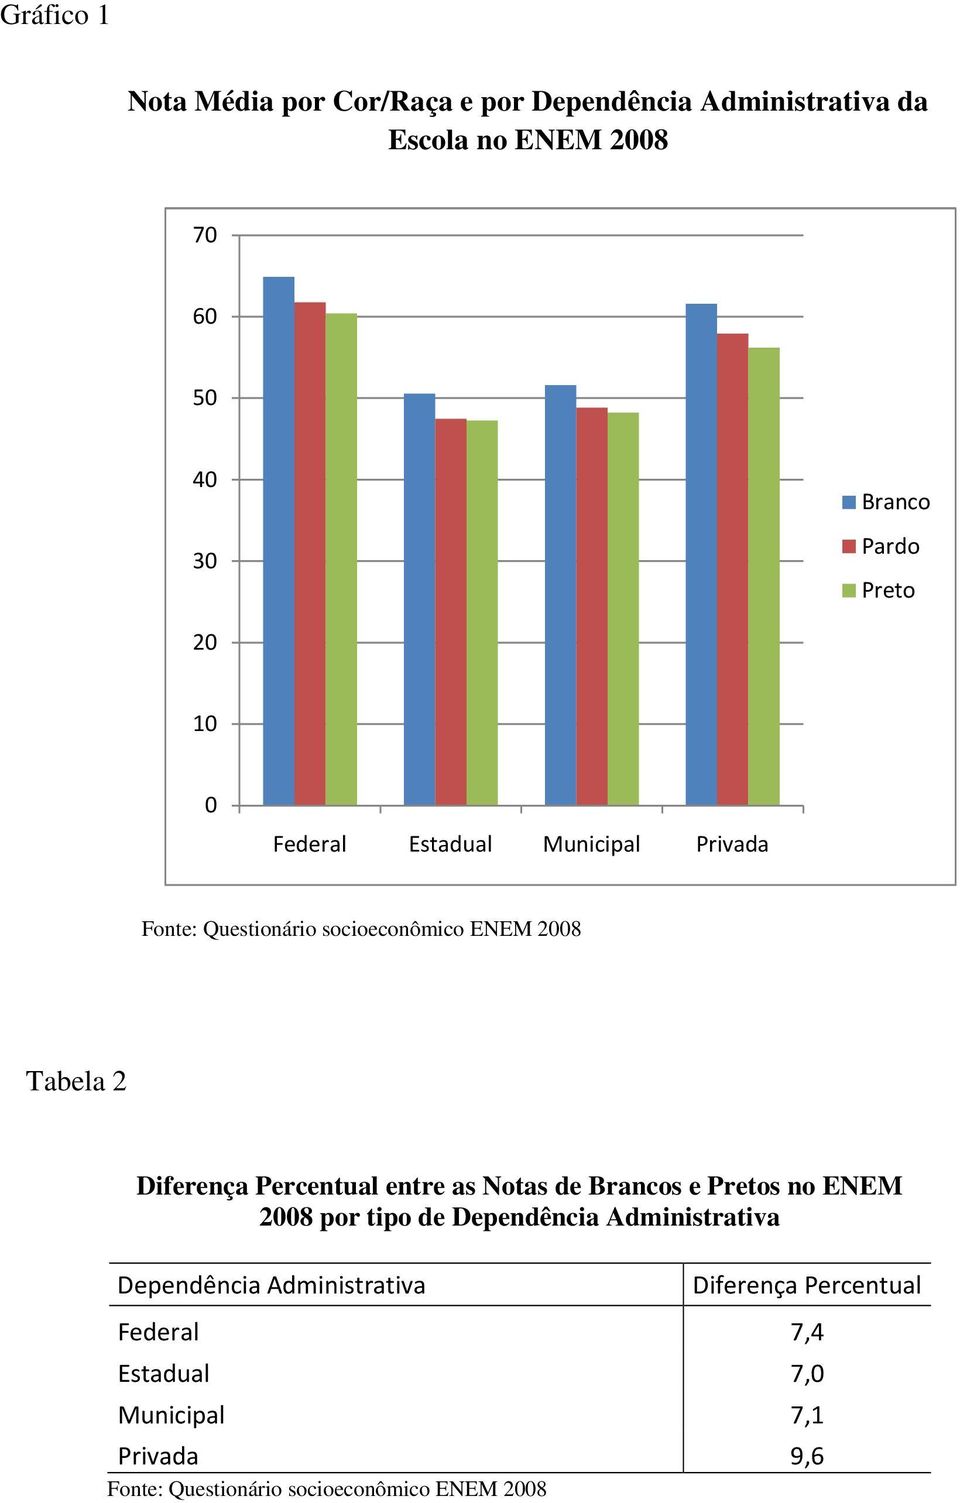 Percentual entre as Notas de Brancos e Pretos no ENEM 2008 por tipo de Dependência